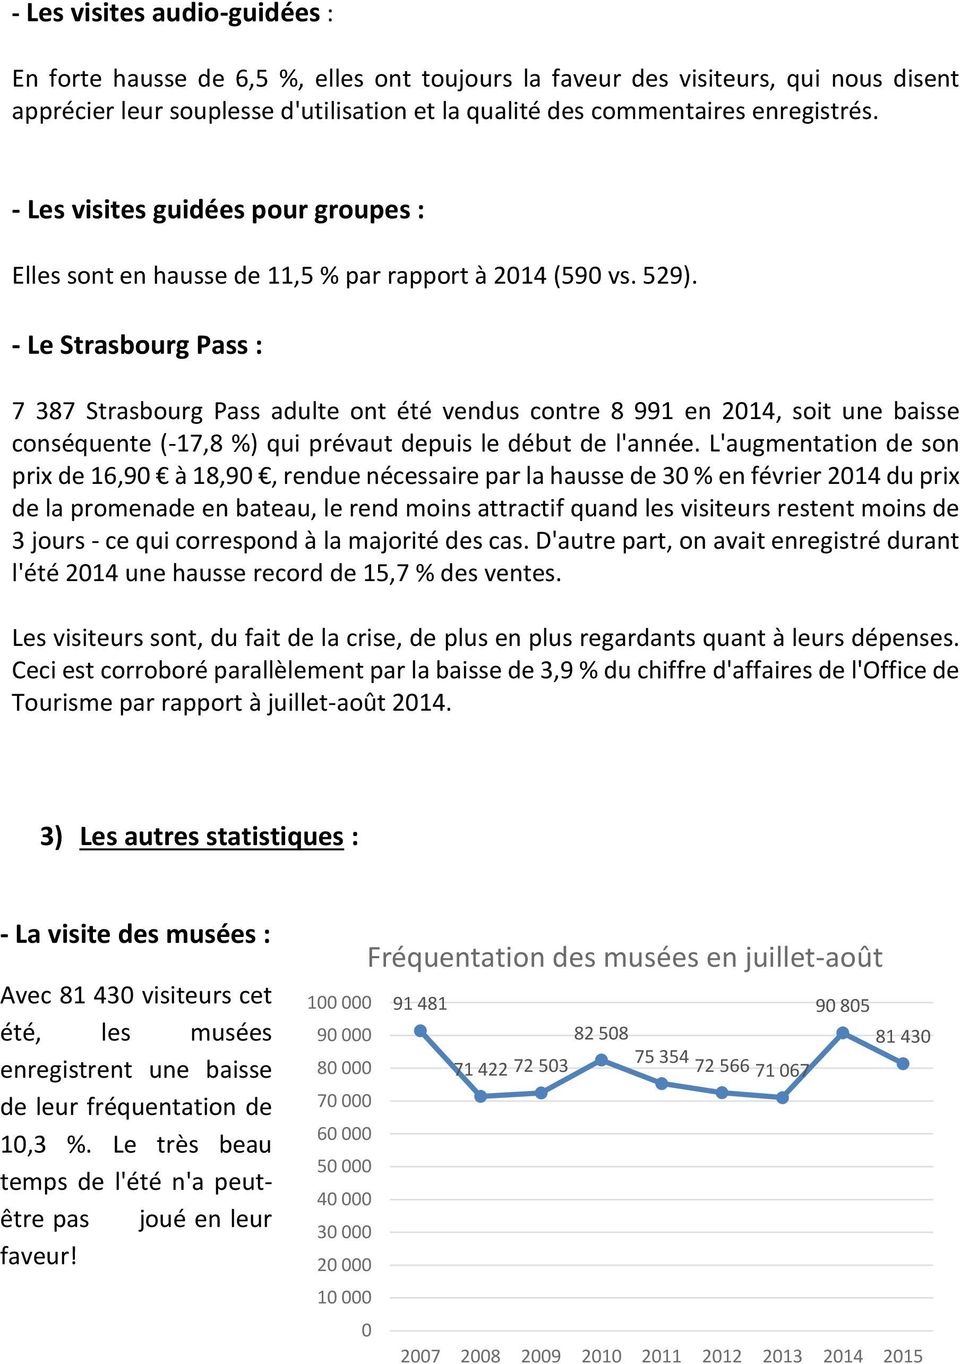 - Le Strasbourg Pass : 7 387 Strasbourg Pass adulte ont été vendus contre 8 991 en 2014, soit une baisse conséquente (-17,8 %) qui prévaut depuis le début de l'année.